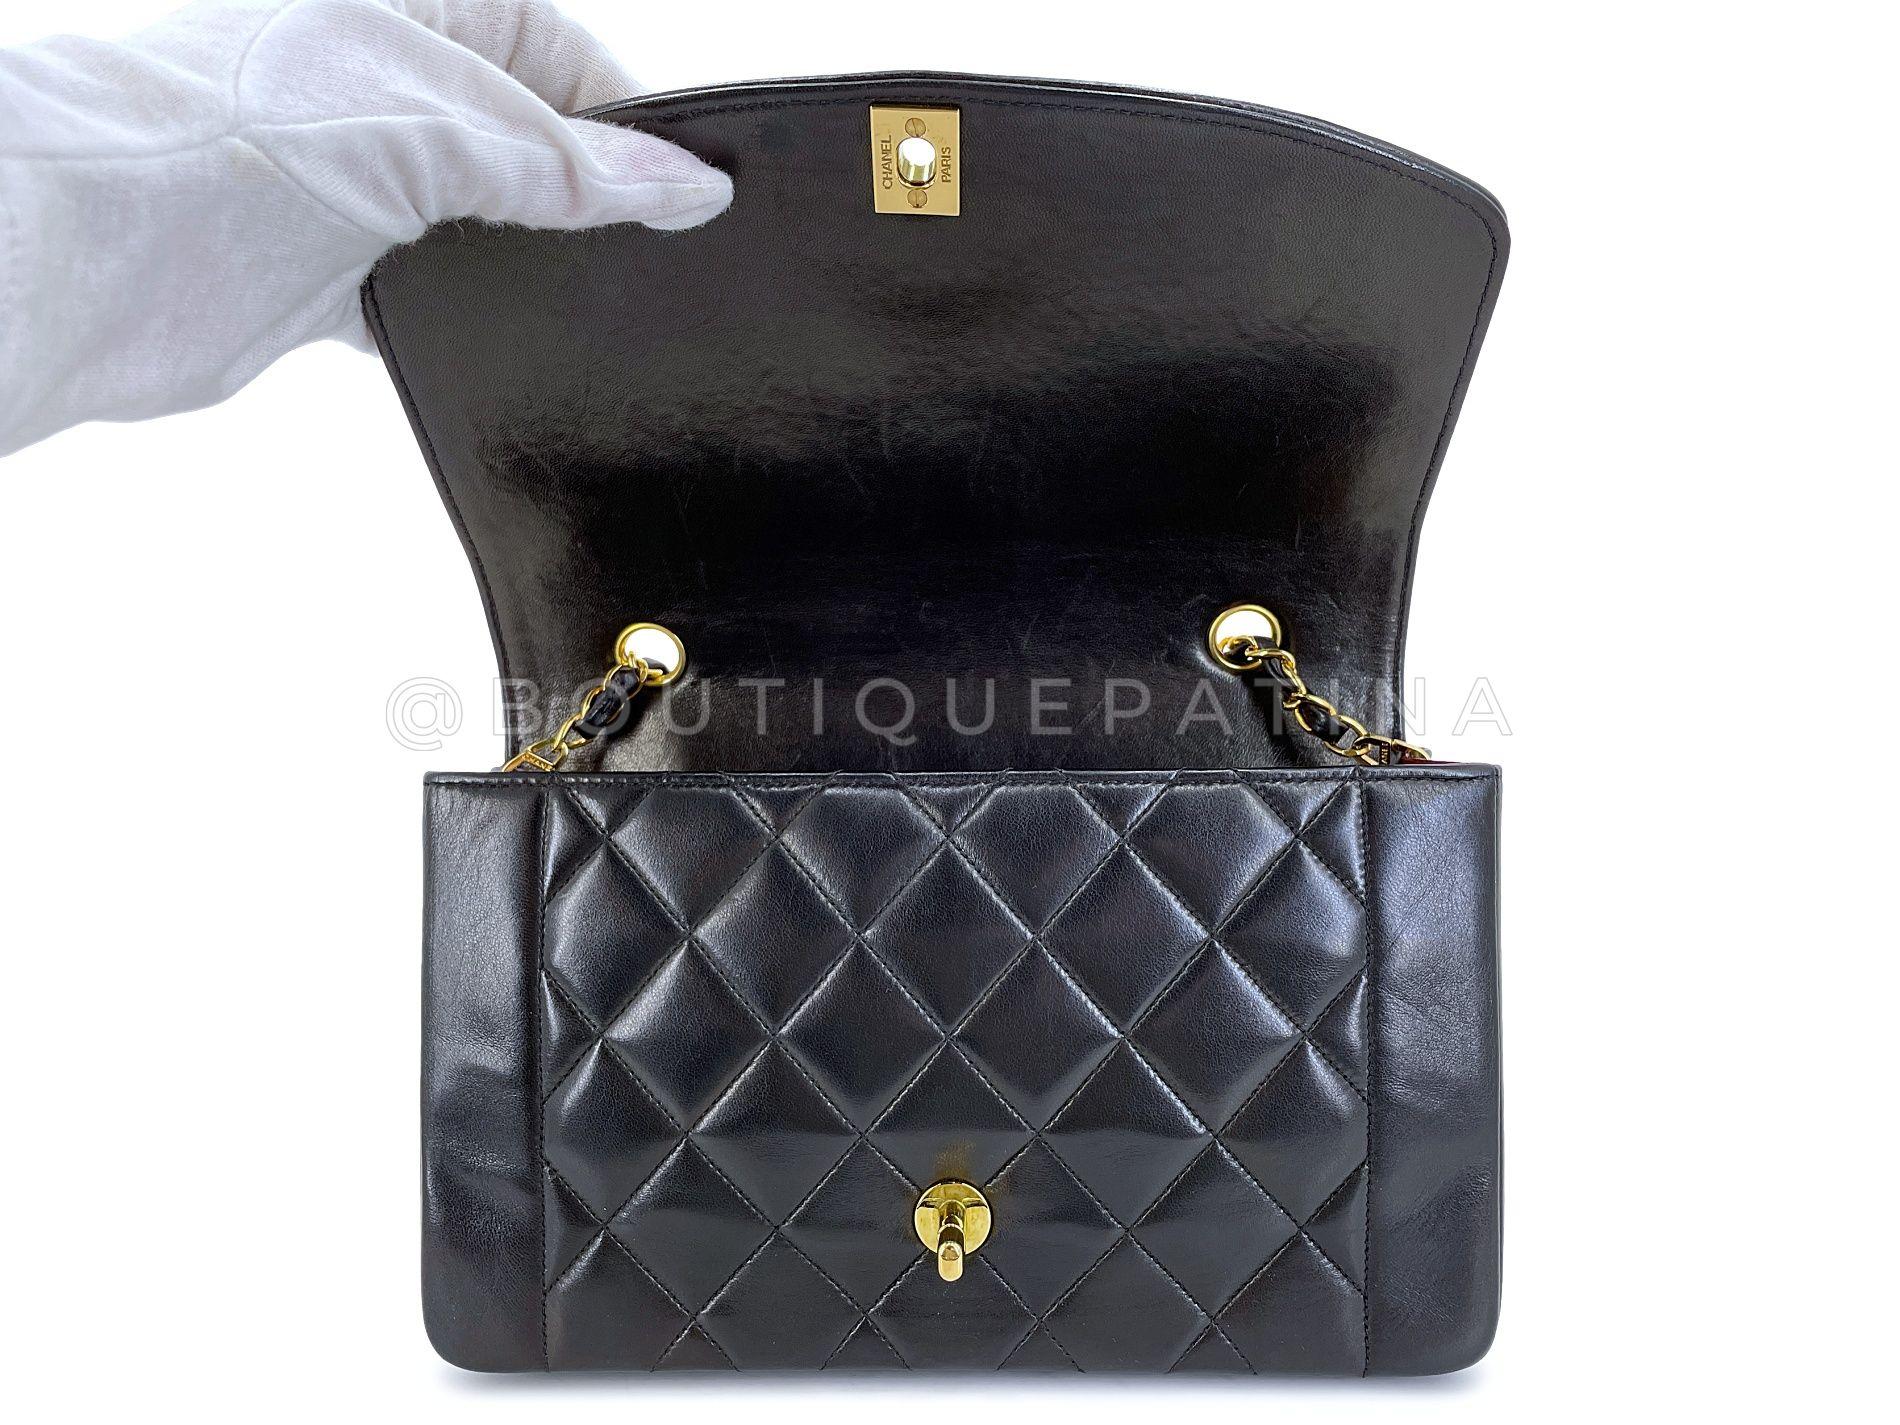 Chanel 1994 Vintage Black Lambskin Medium Diana Flap Bag 24k GHW 64411 For Sale 5